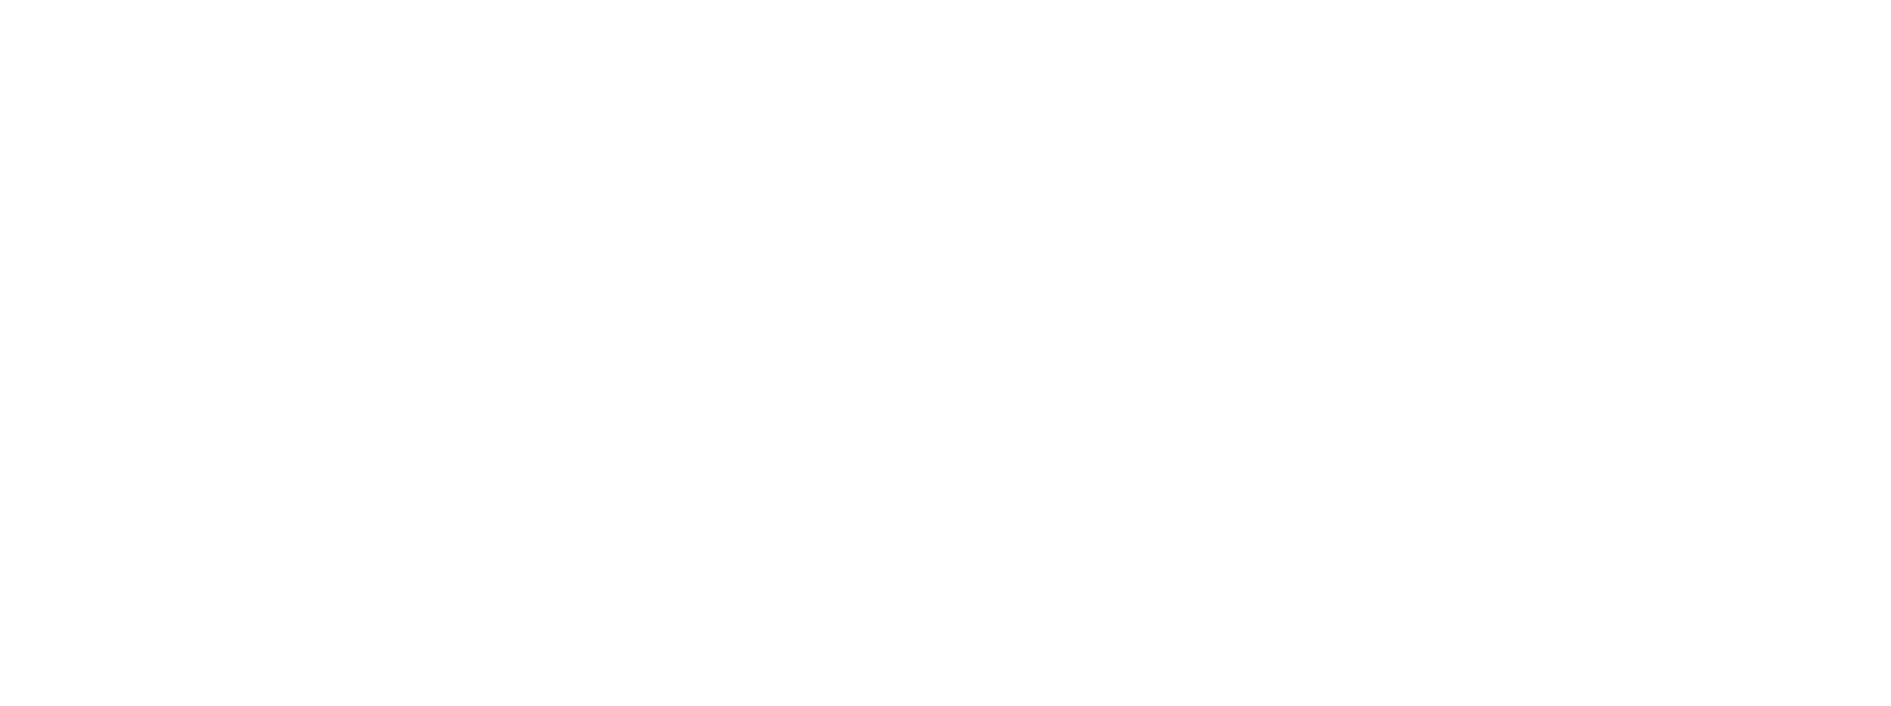 Tulane University Logo